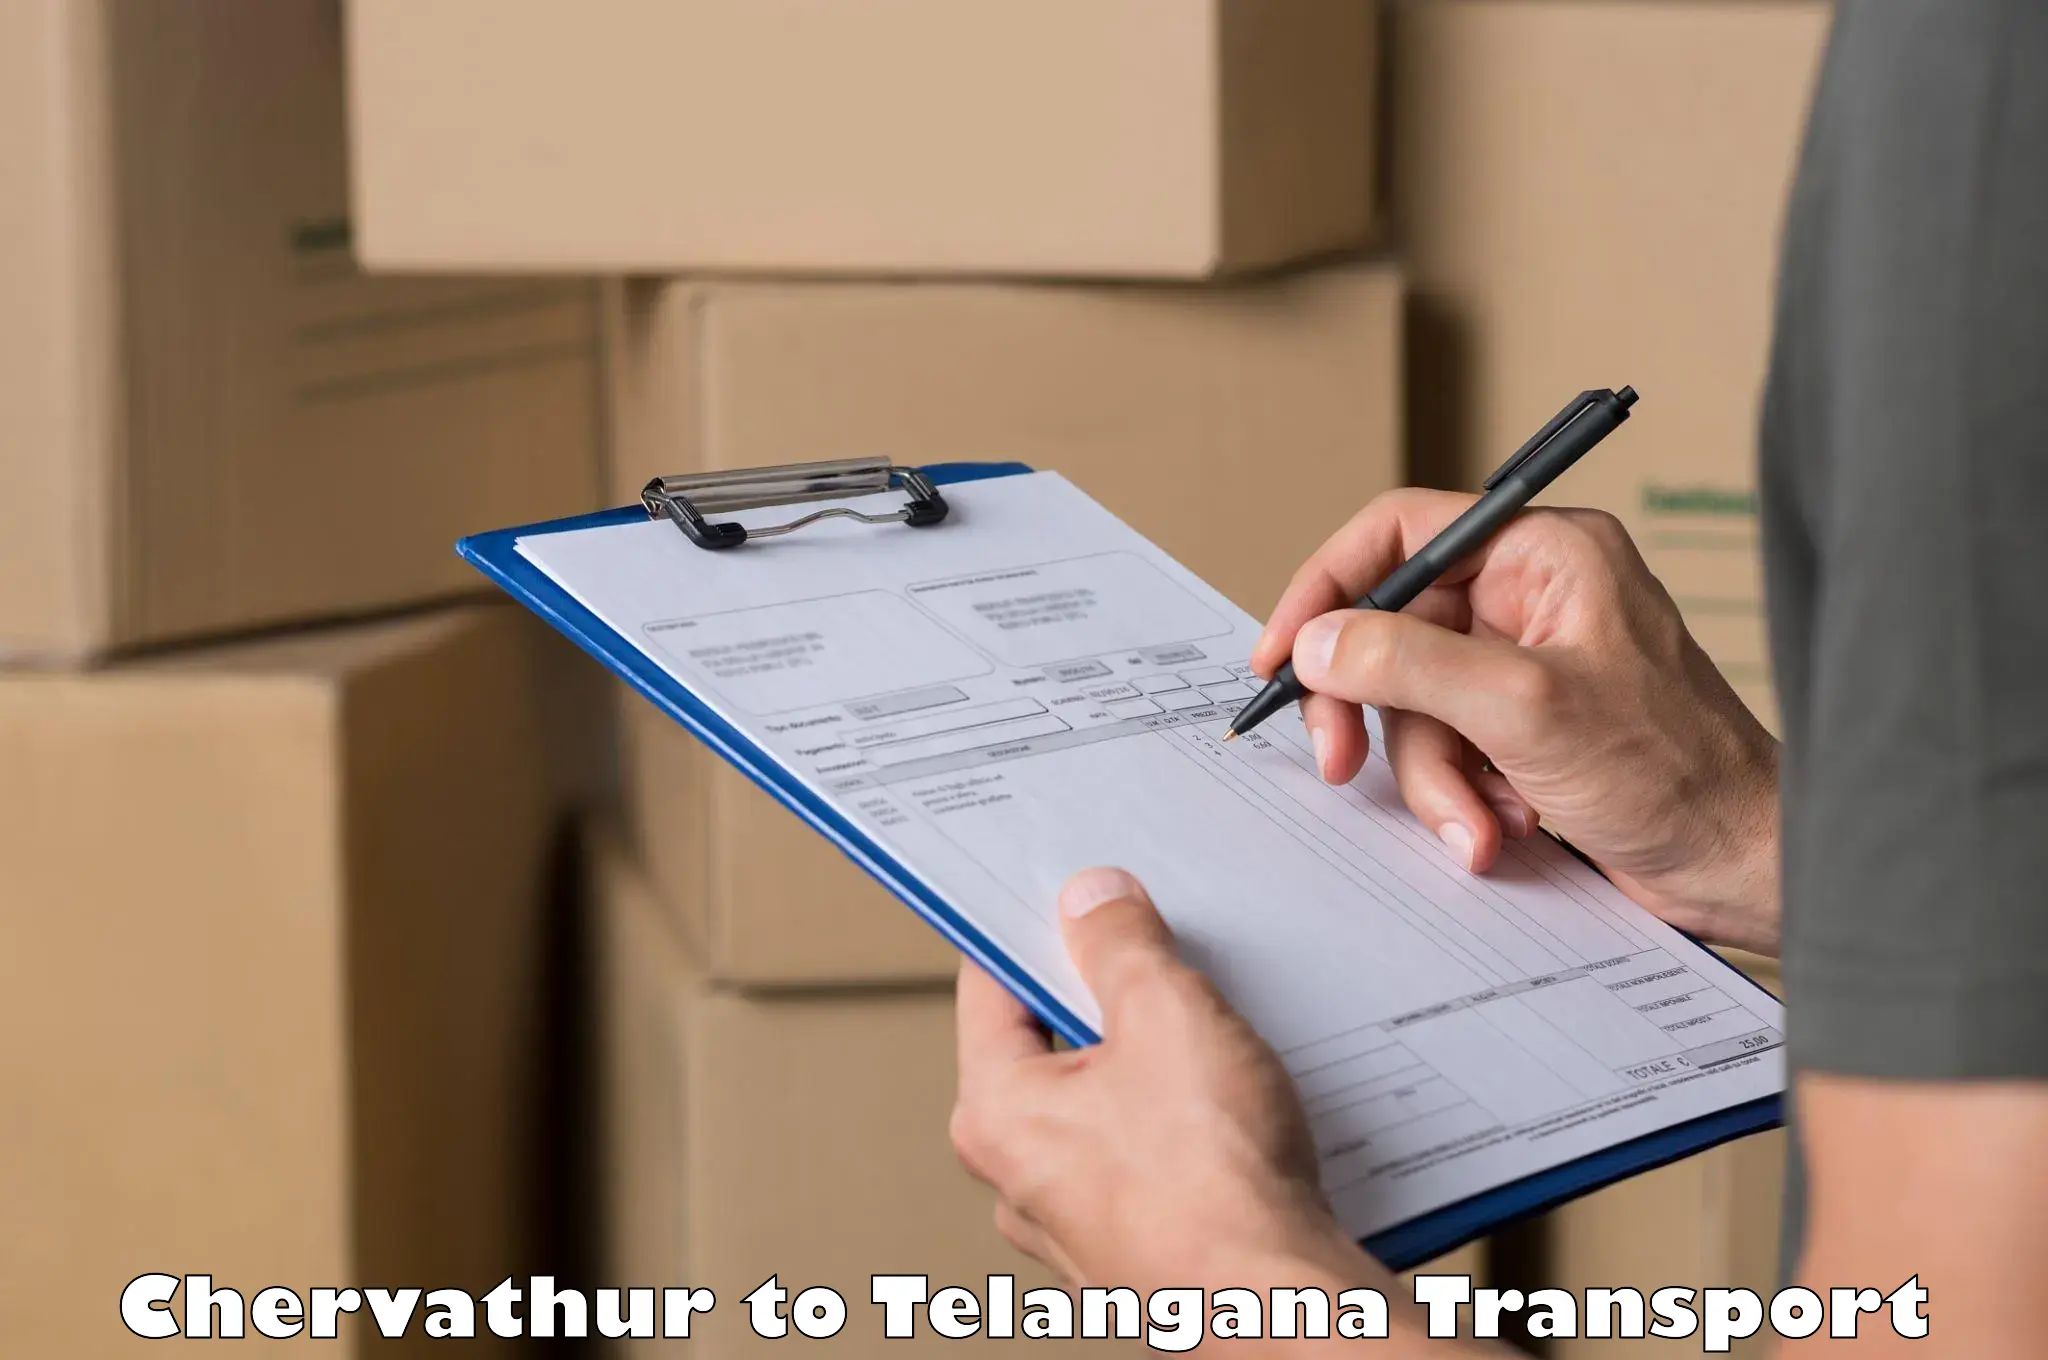 Nearest transport service Chervathur to Tadvai